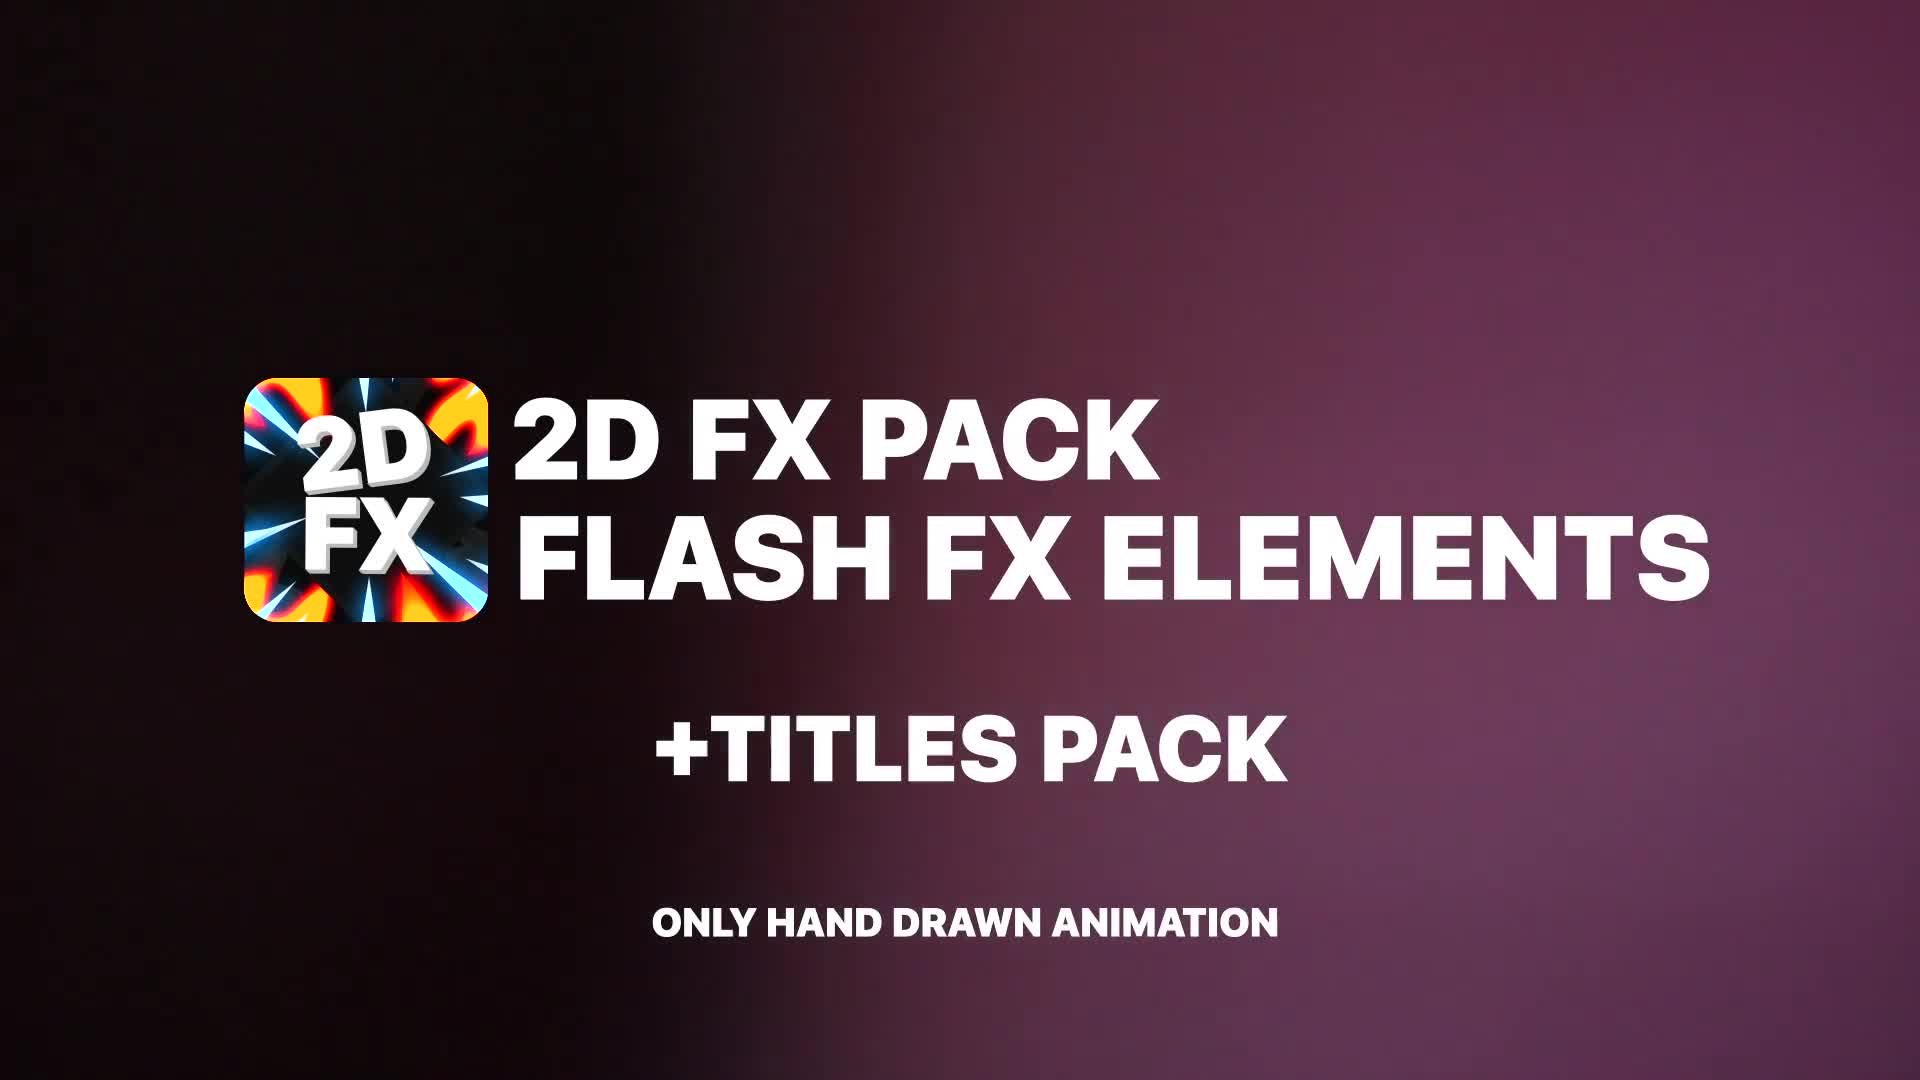 Flash FX Pack | Premiere Pro MOGRT Videohive 31518614 Premiere Pro Image 1